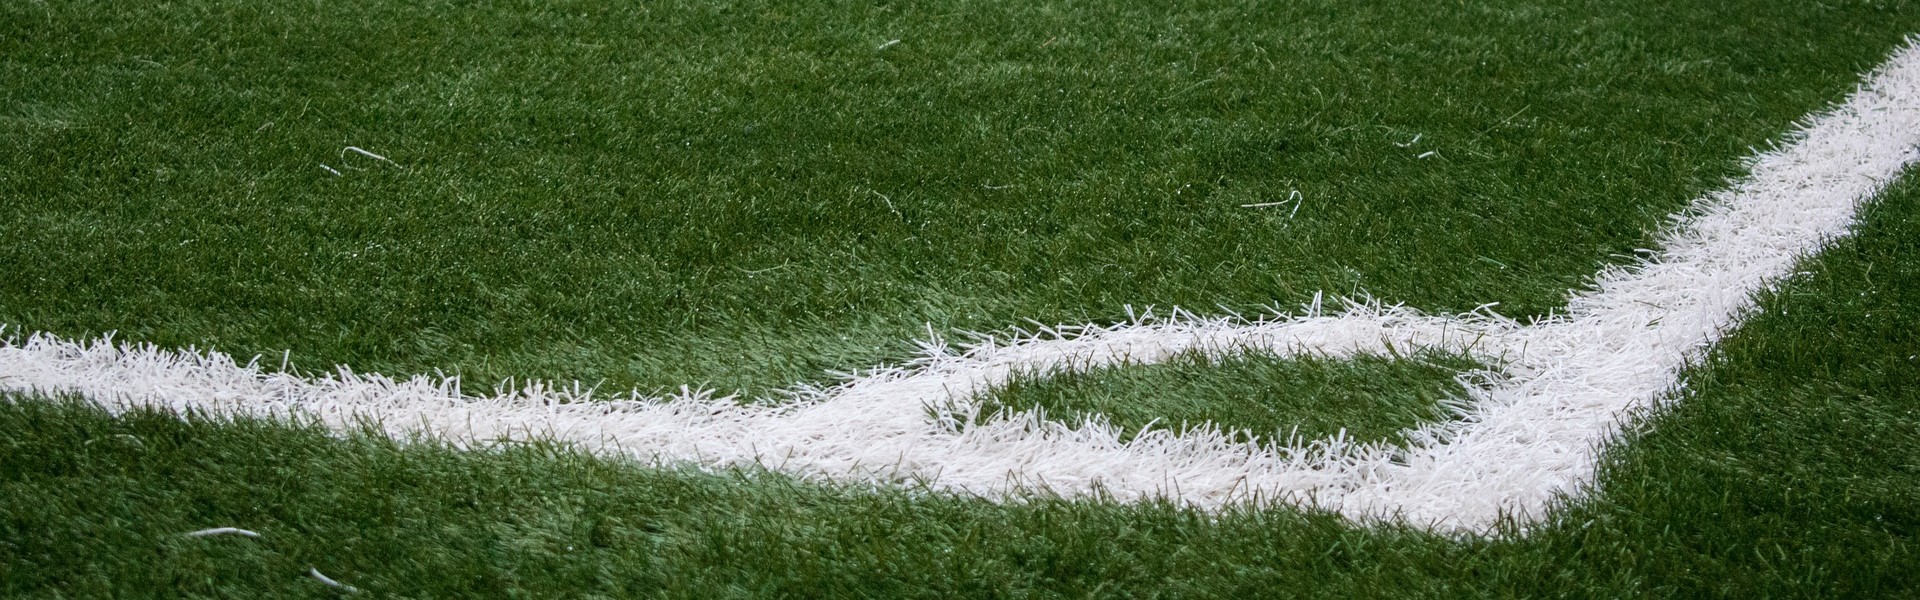 soccer ball on grassy field